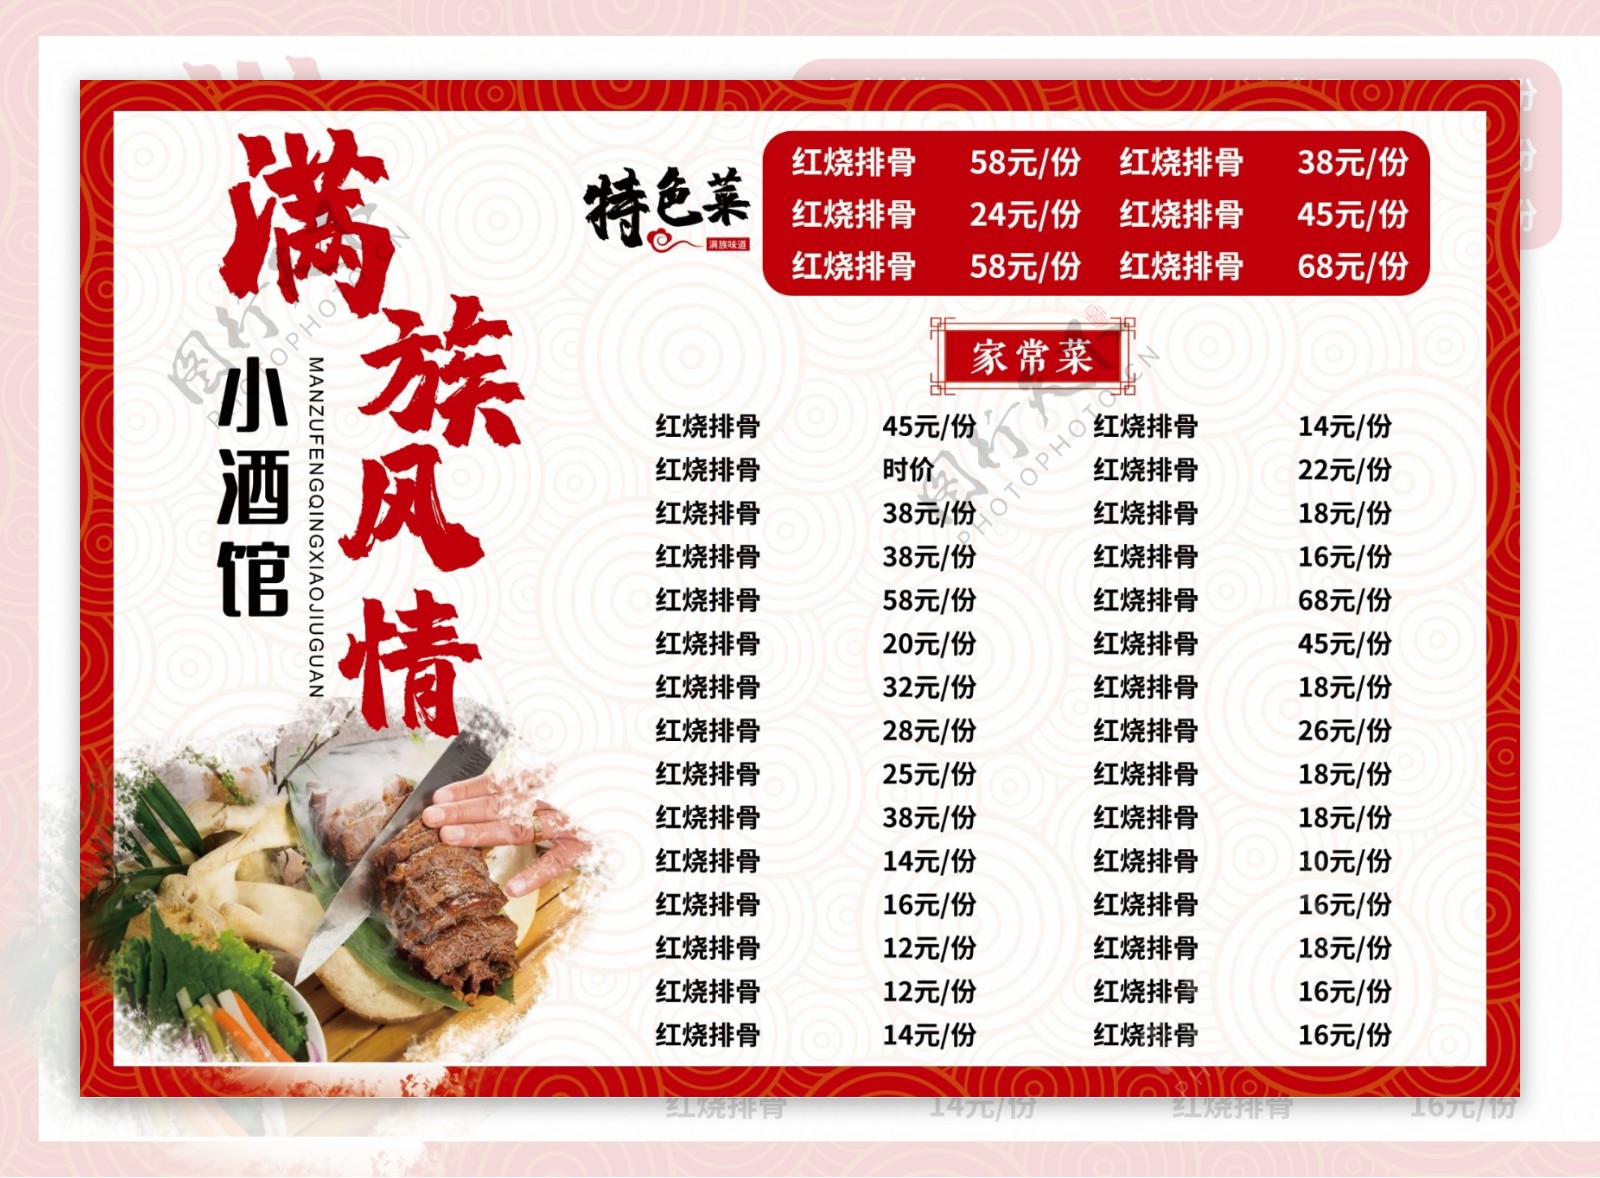 满族风情酒馆红色中国风菜谱菜单图片